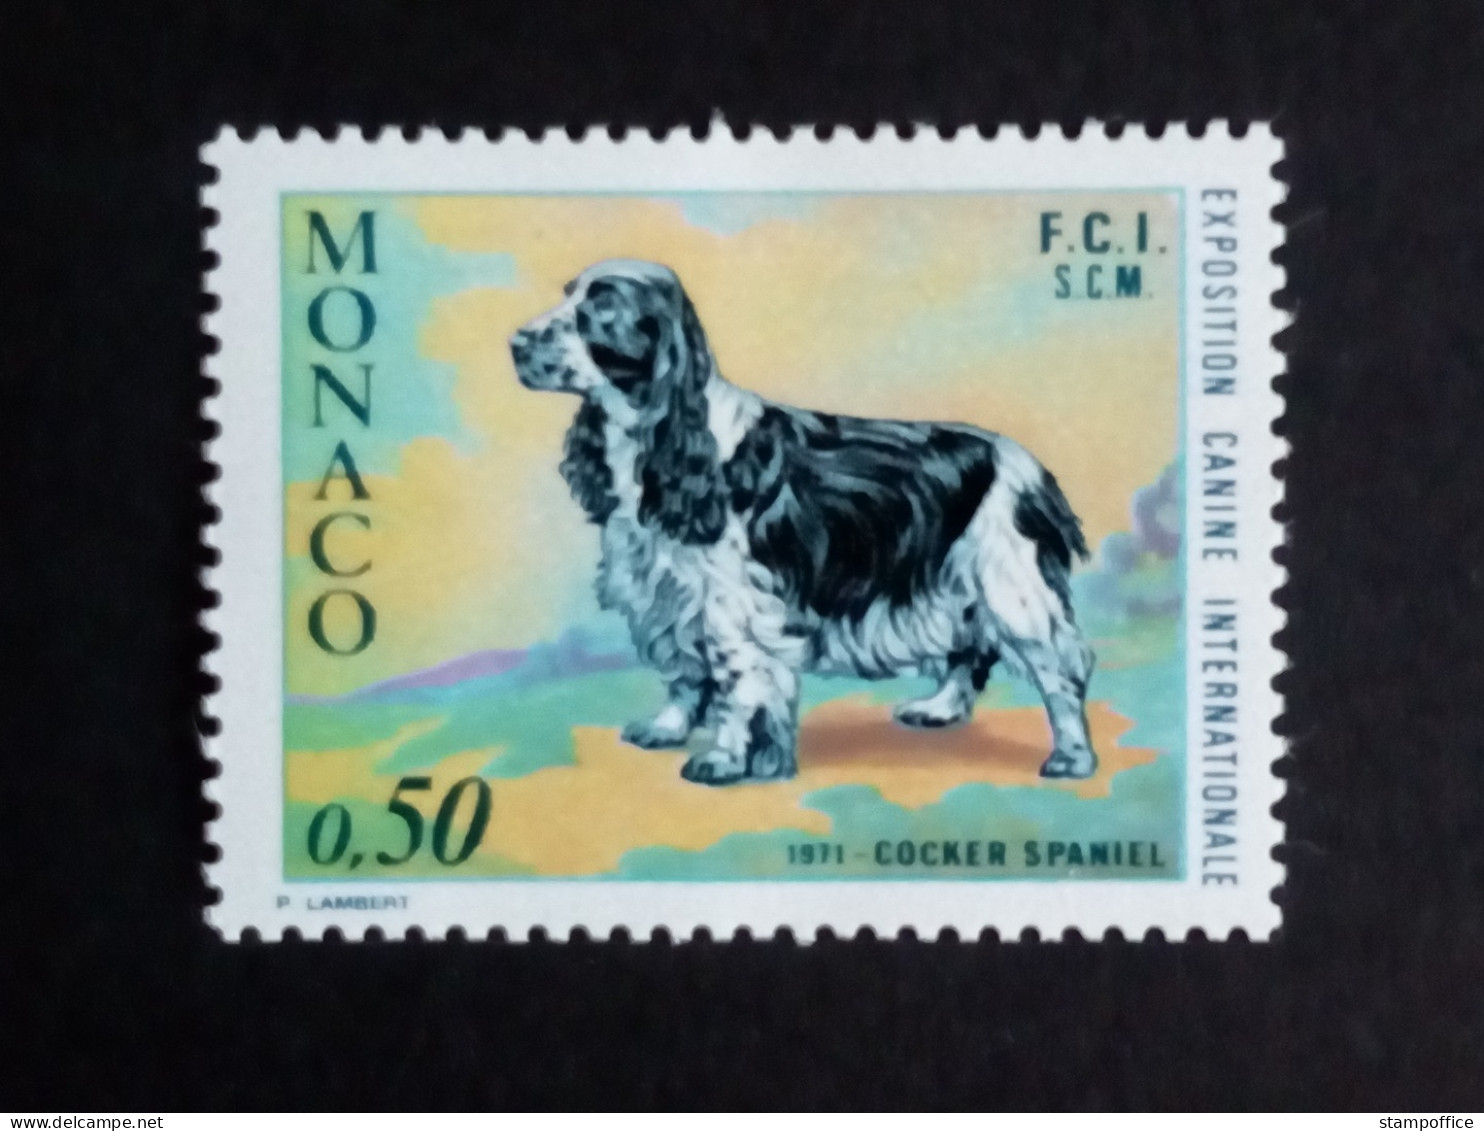 MONACO MI-NR. 1012 POSTFRISCH(MINT) HUNDEAUSSTELLUNG MONTE CARLO 1971 COCKERSPANIEL - Honden